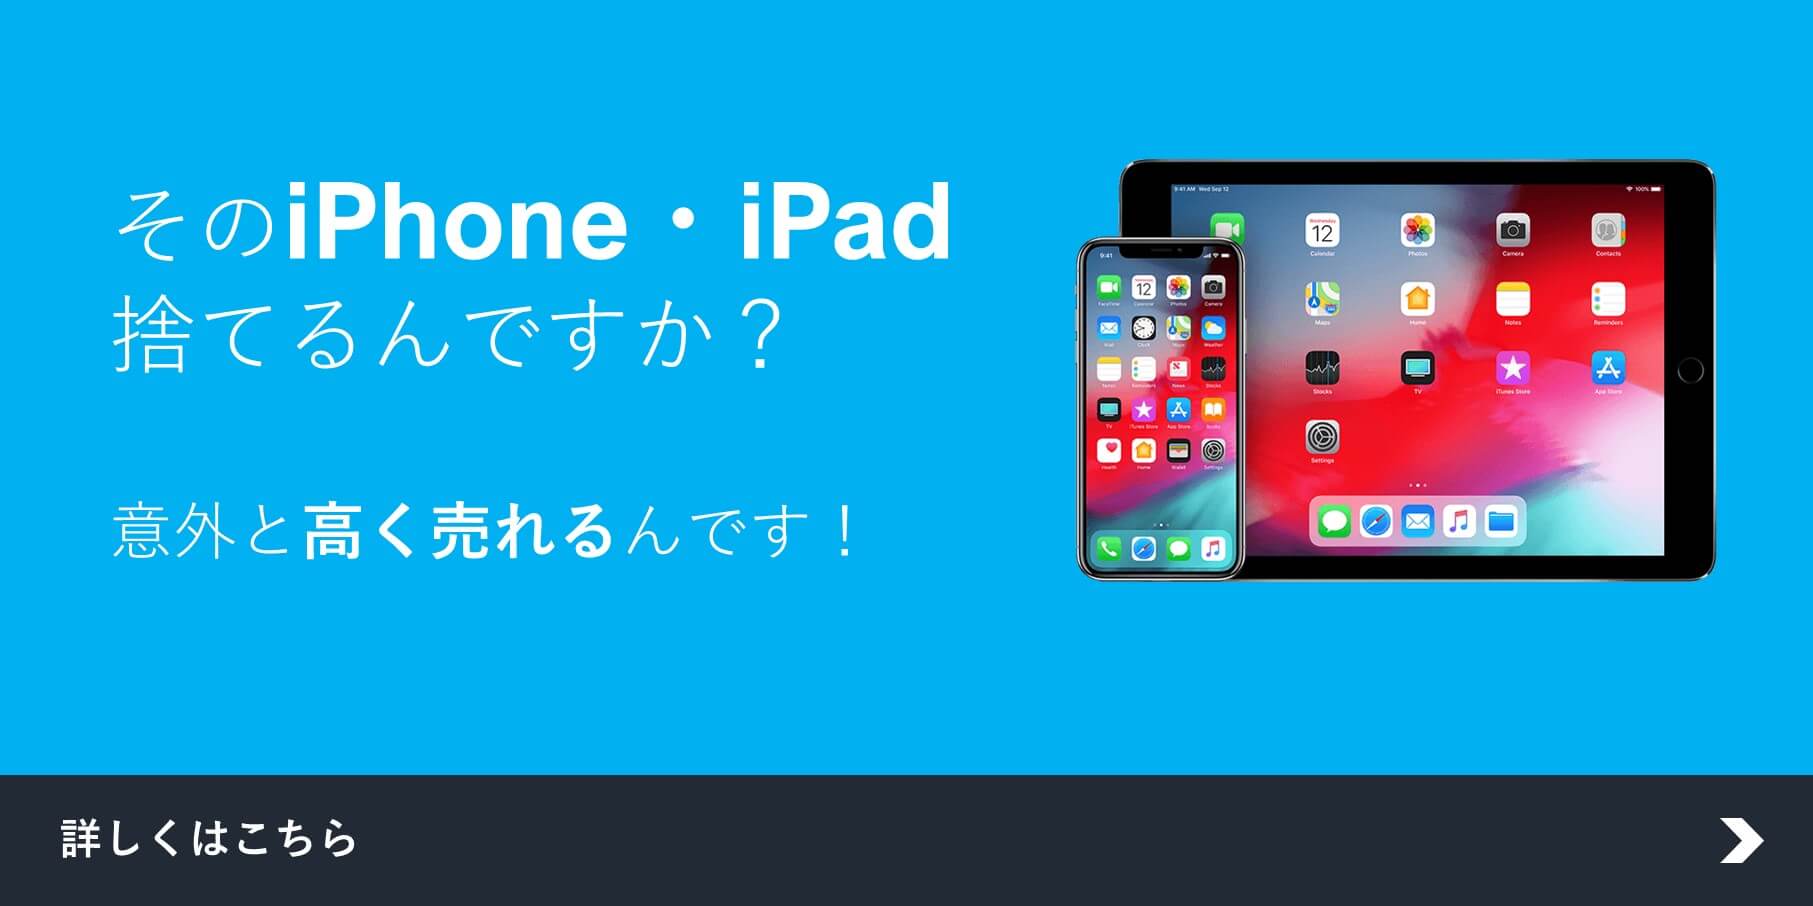 ★iPhone・iPad買取強化実施中のお知らせ☆